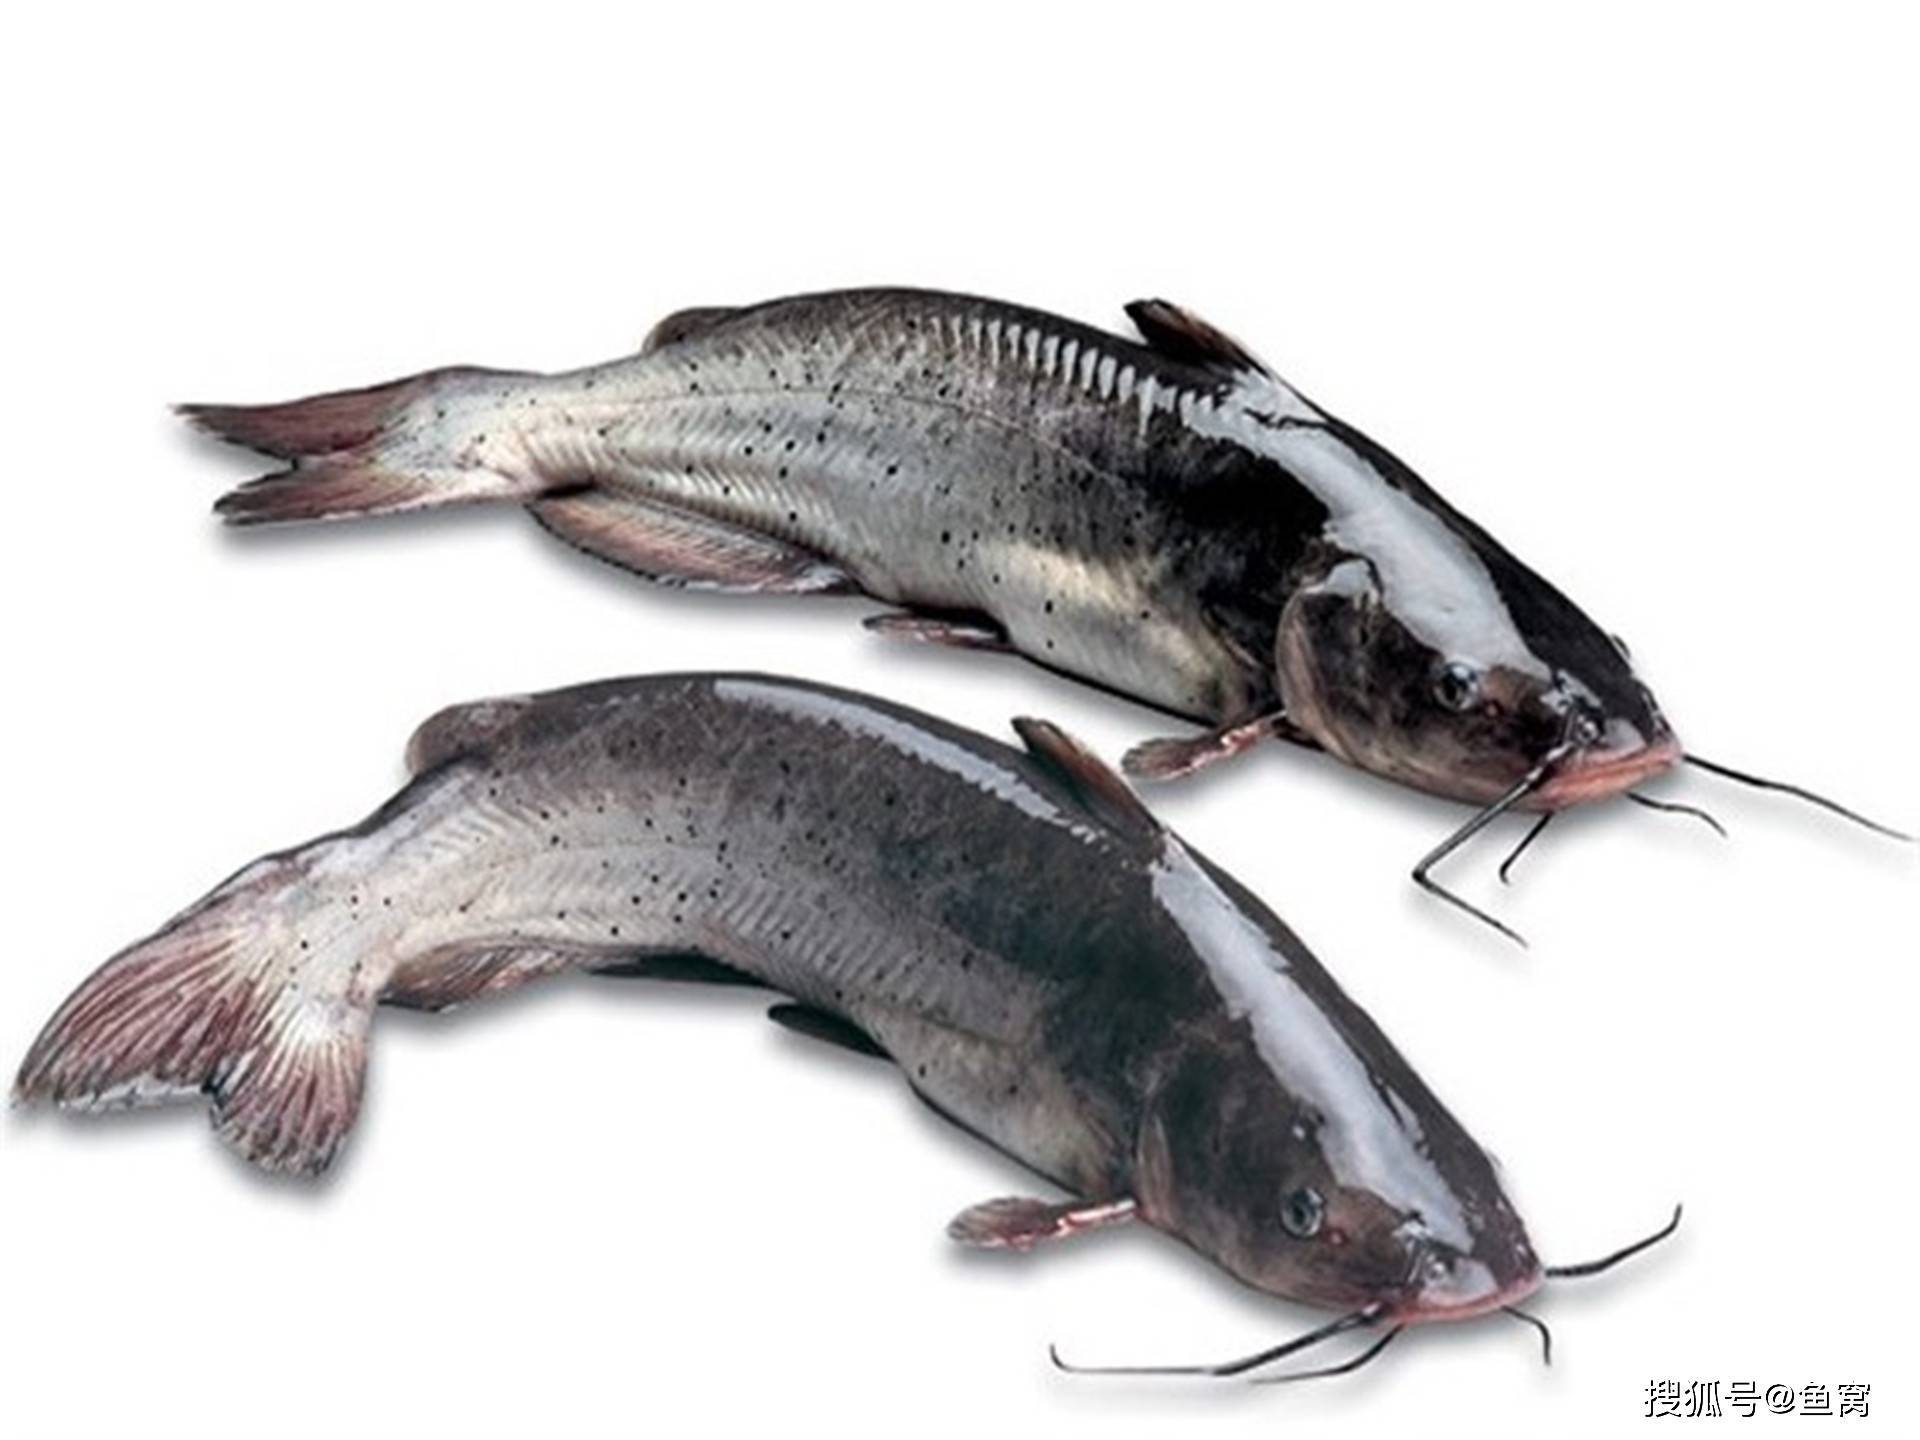 广西名鱼芝麻剑鱼曾是广西家常菜,如今150块一斤,还一鱼难求